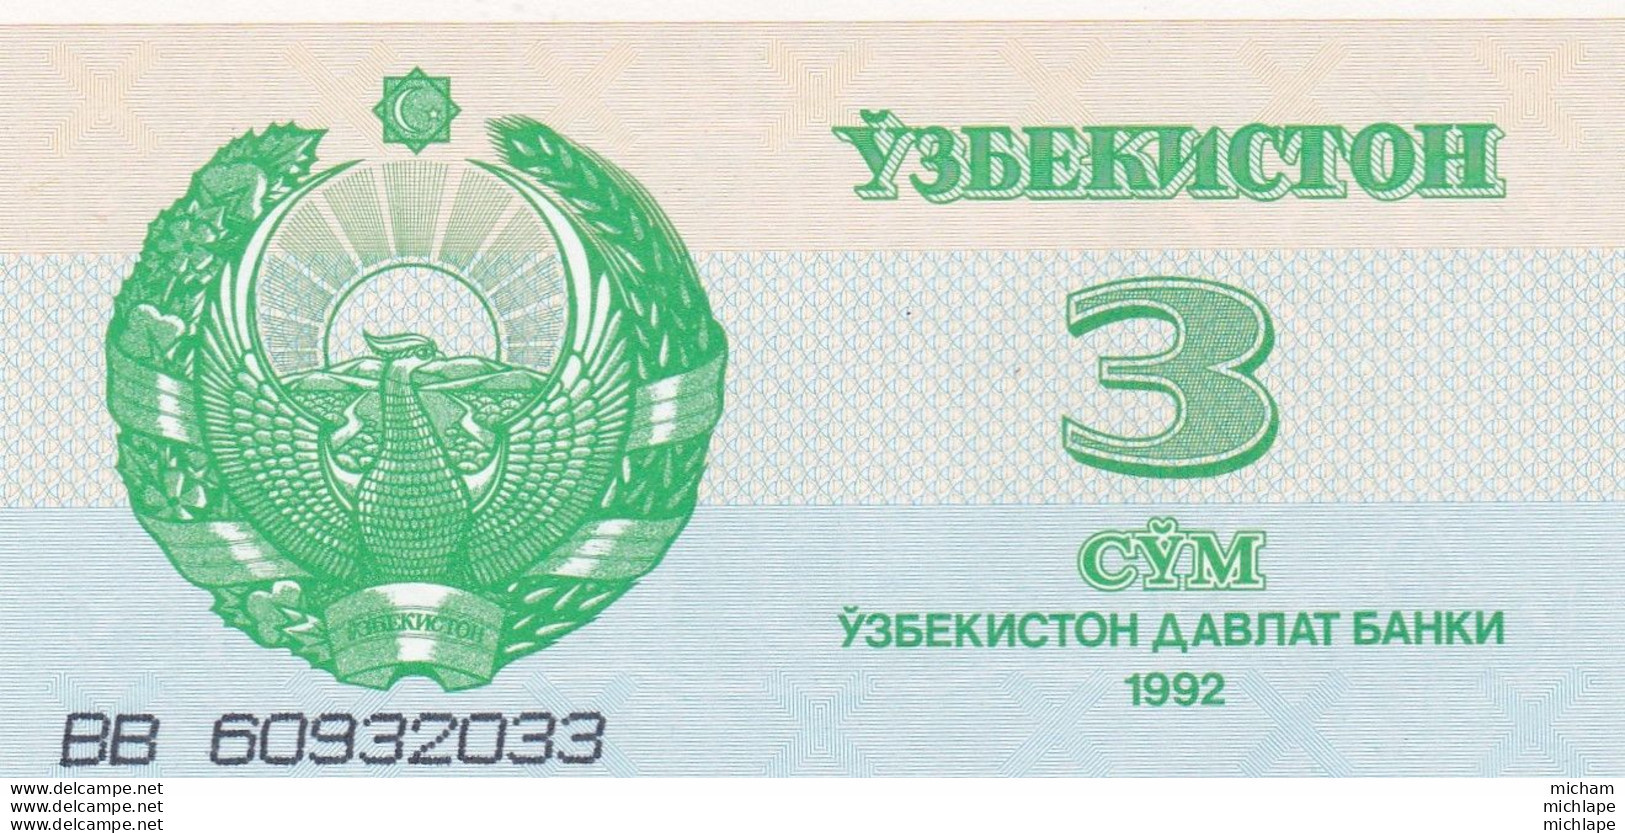 Billet Neuf  Ouzbékistan 1992 - 3 Cym - Uzbekistan